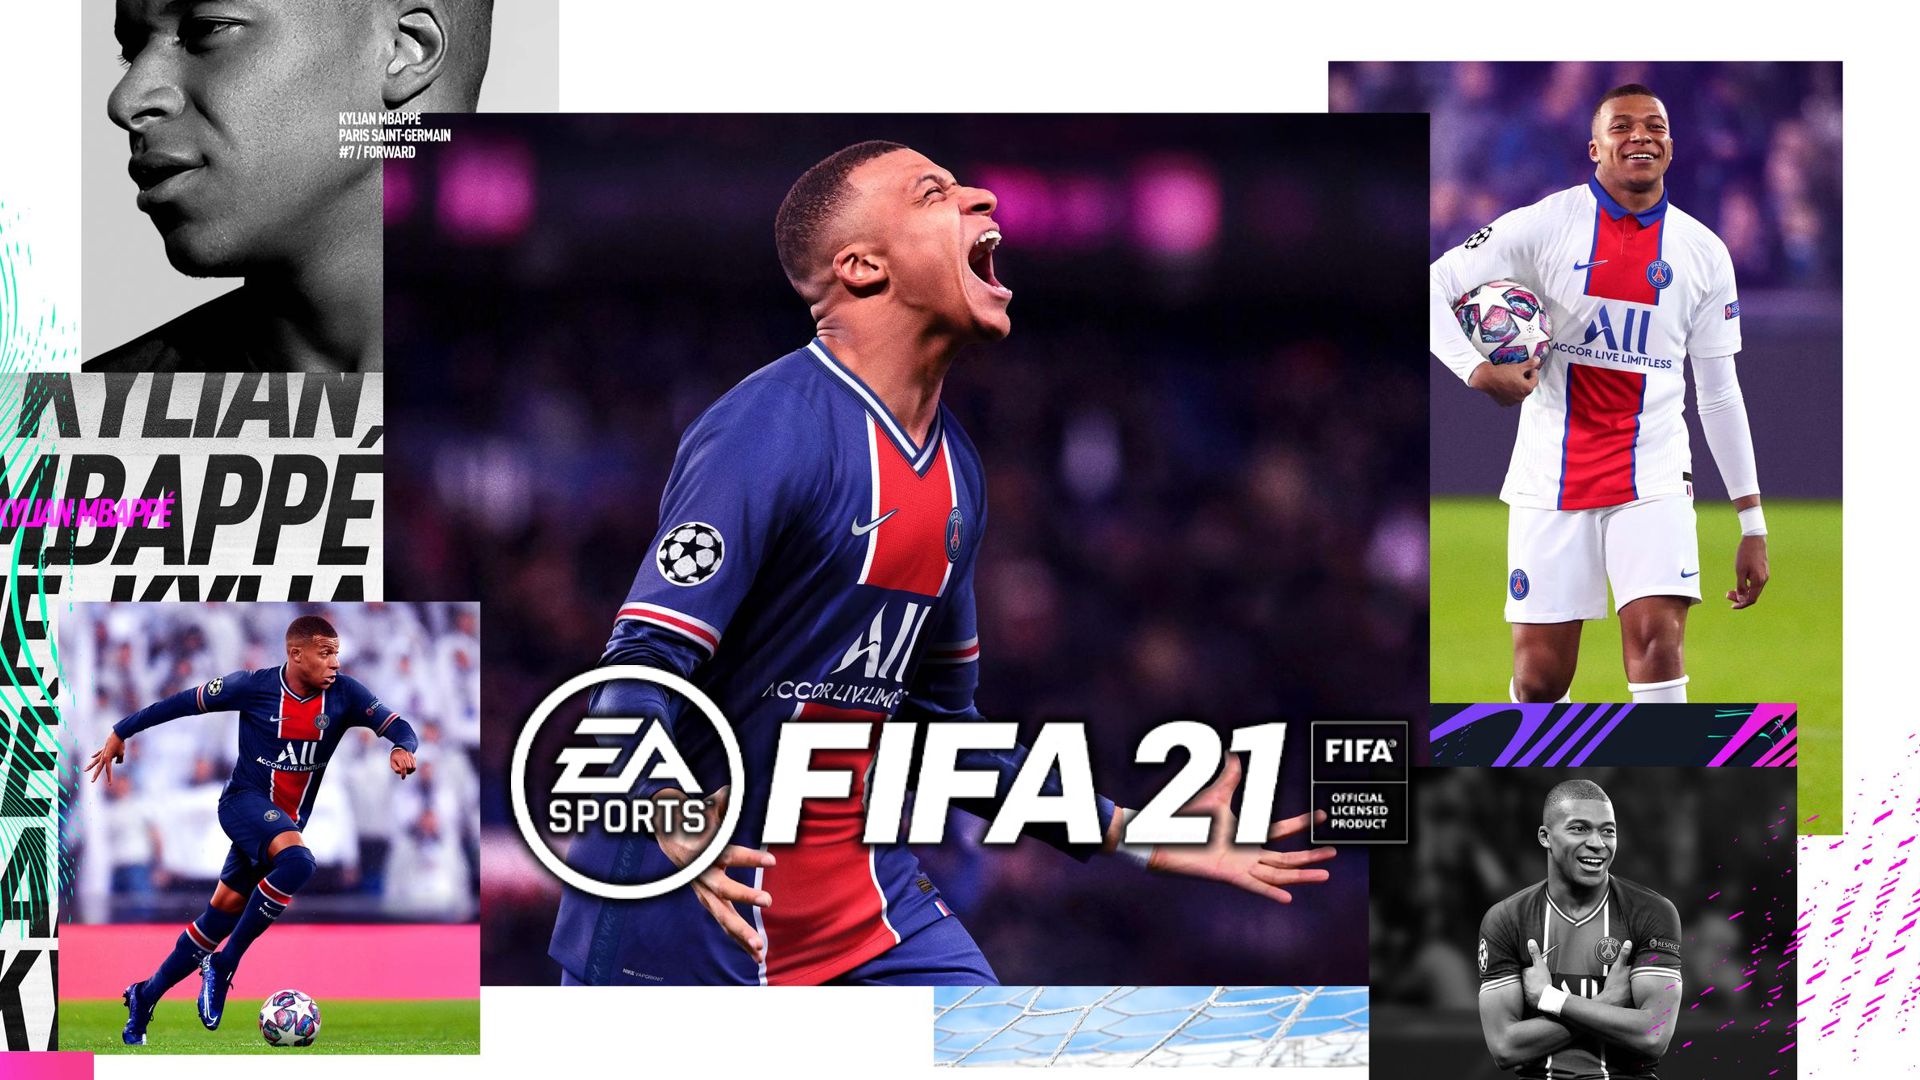 Le Meilleur du PSG on X: La maquette de FIFA 21 avec le PSG